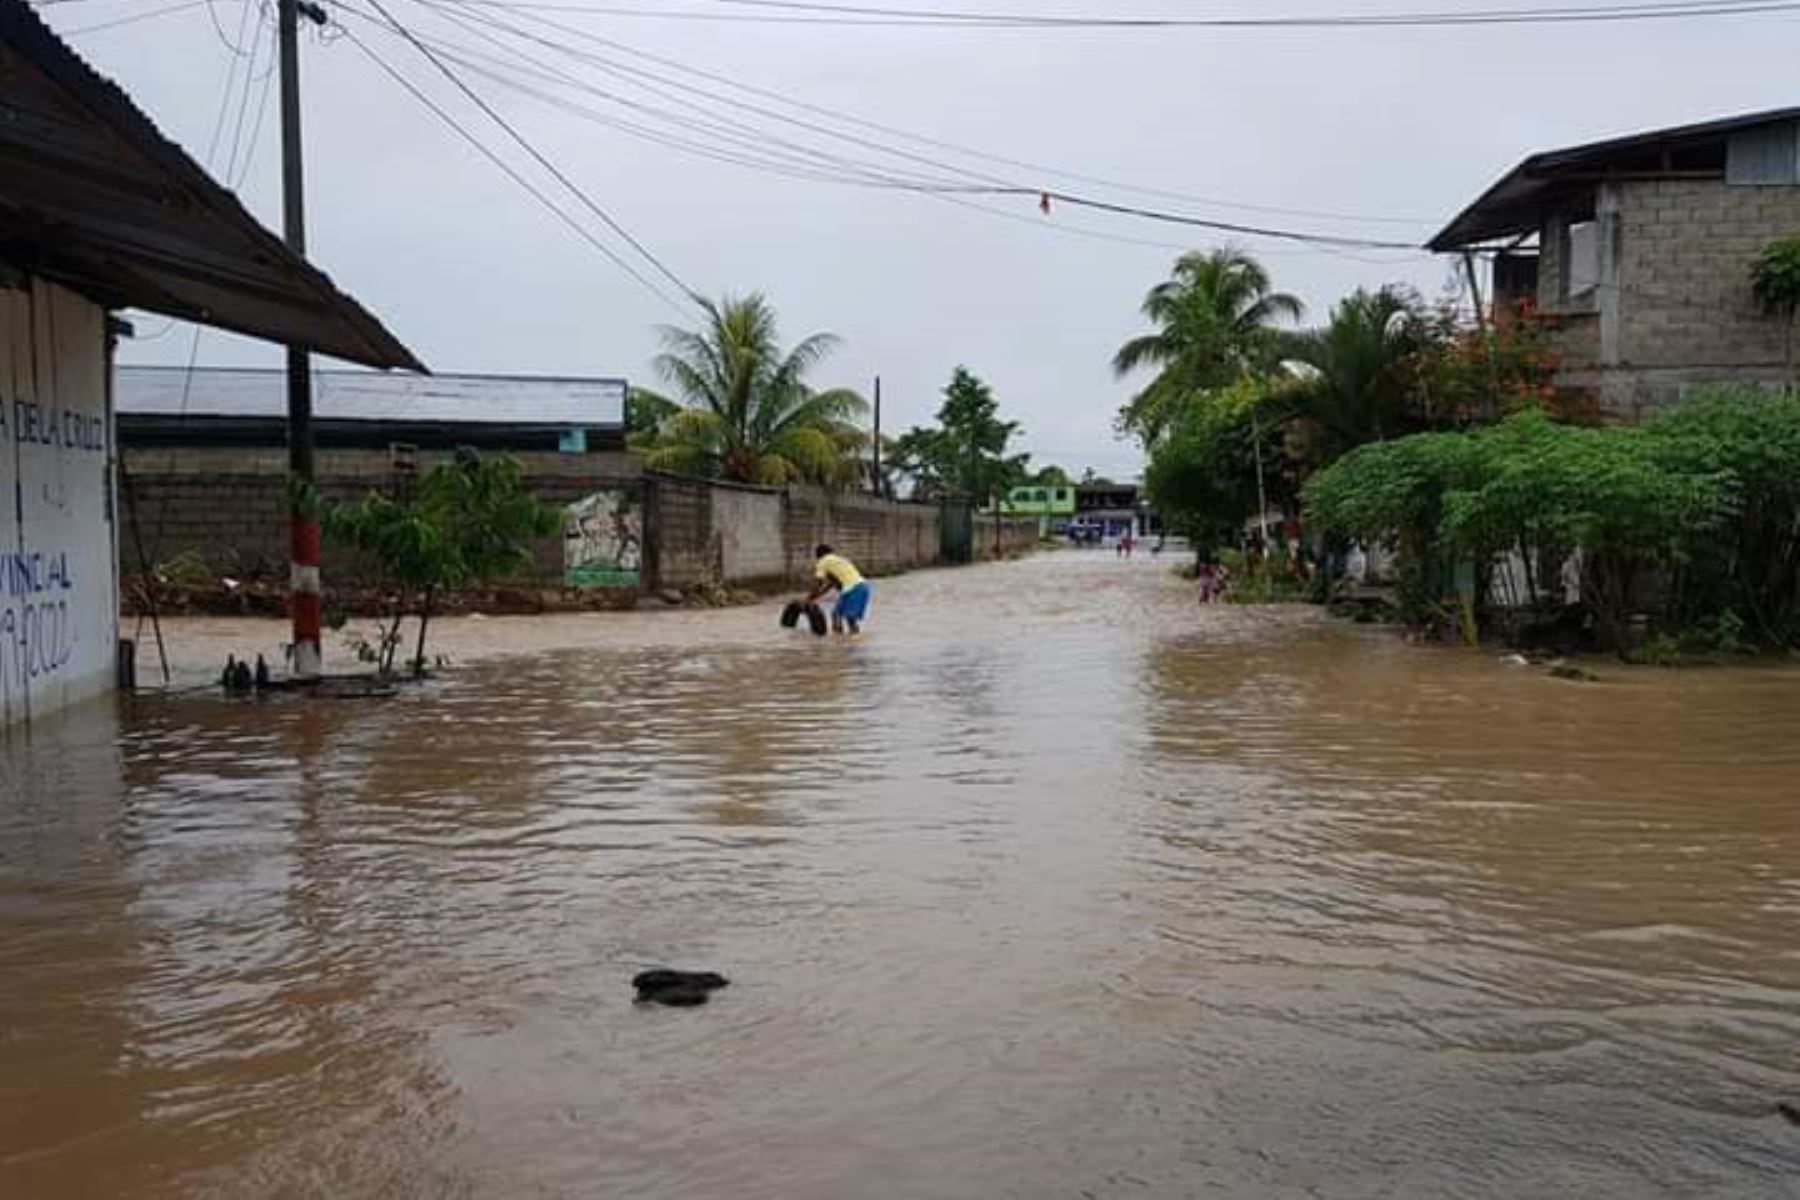 El desborde del río Chayhuallacu provocó una inundación en el distrito de Pólvora, región San Martín.